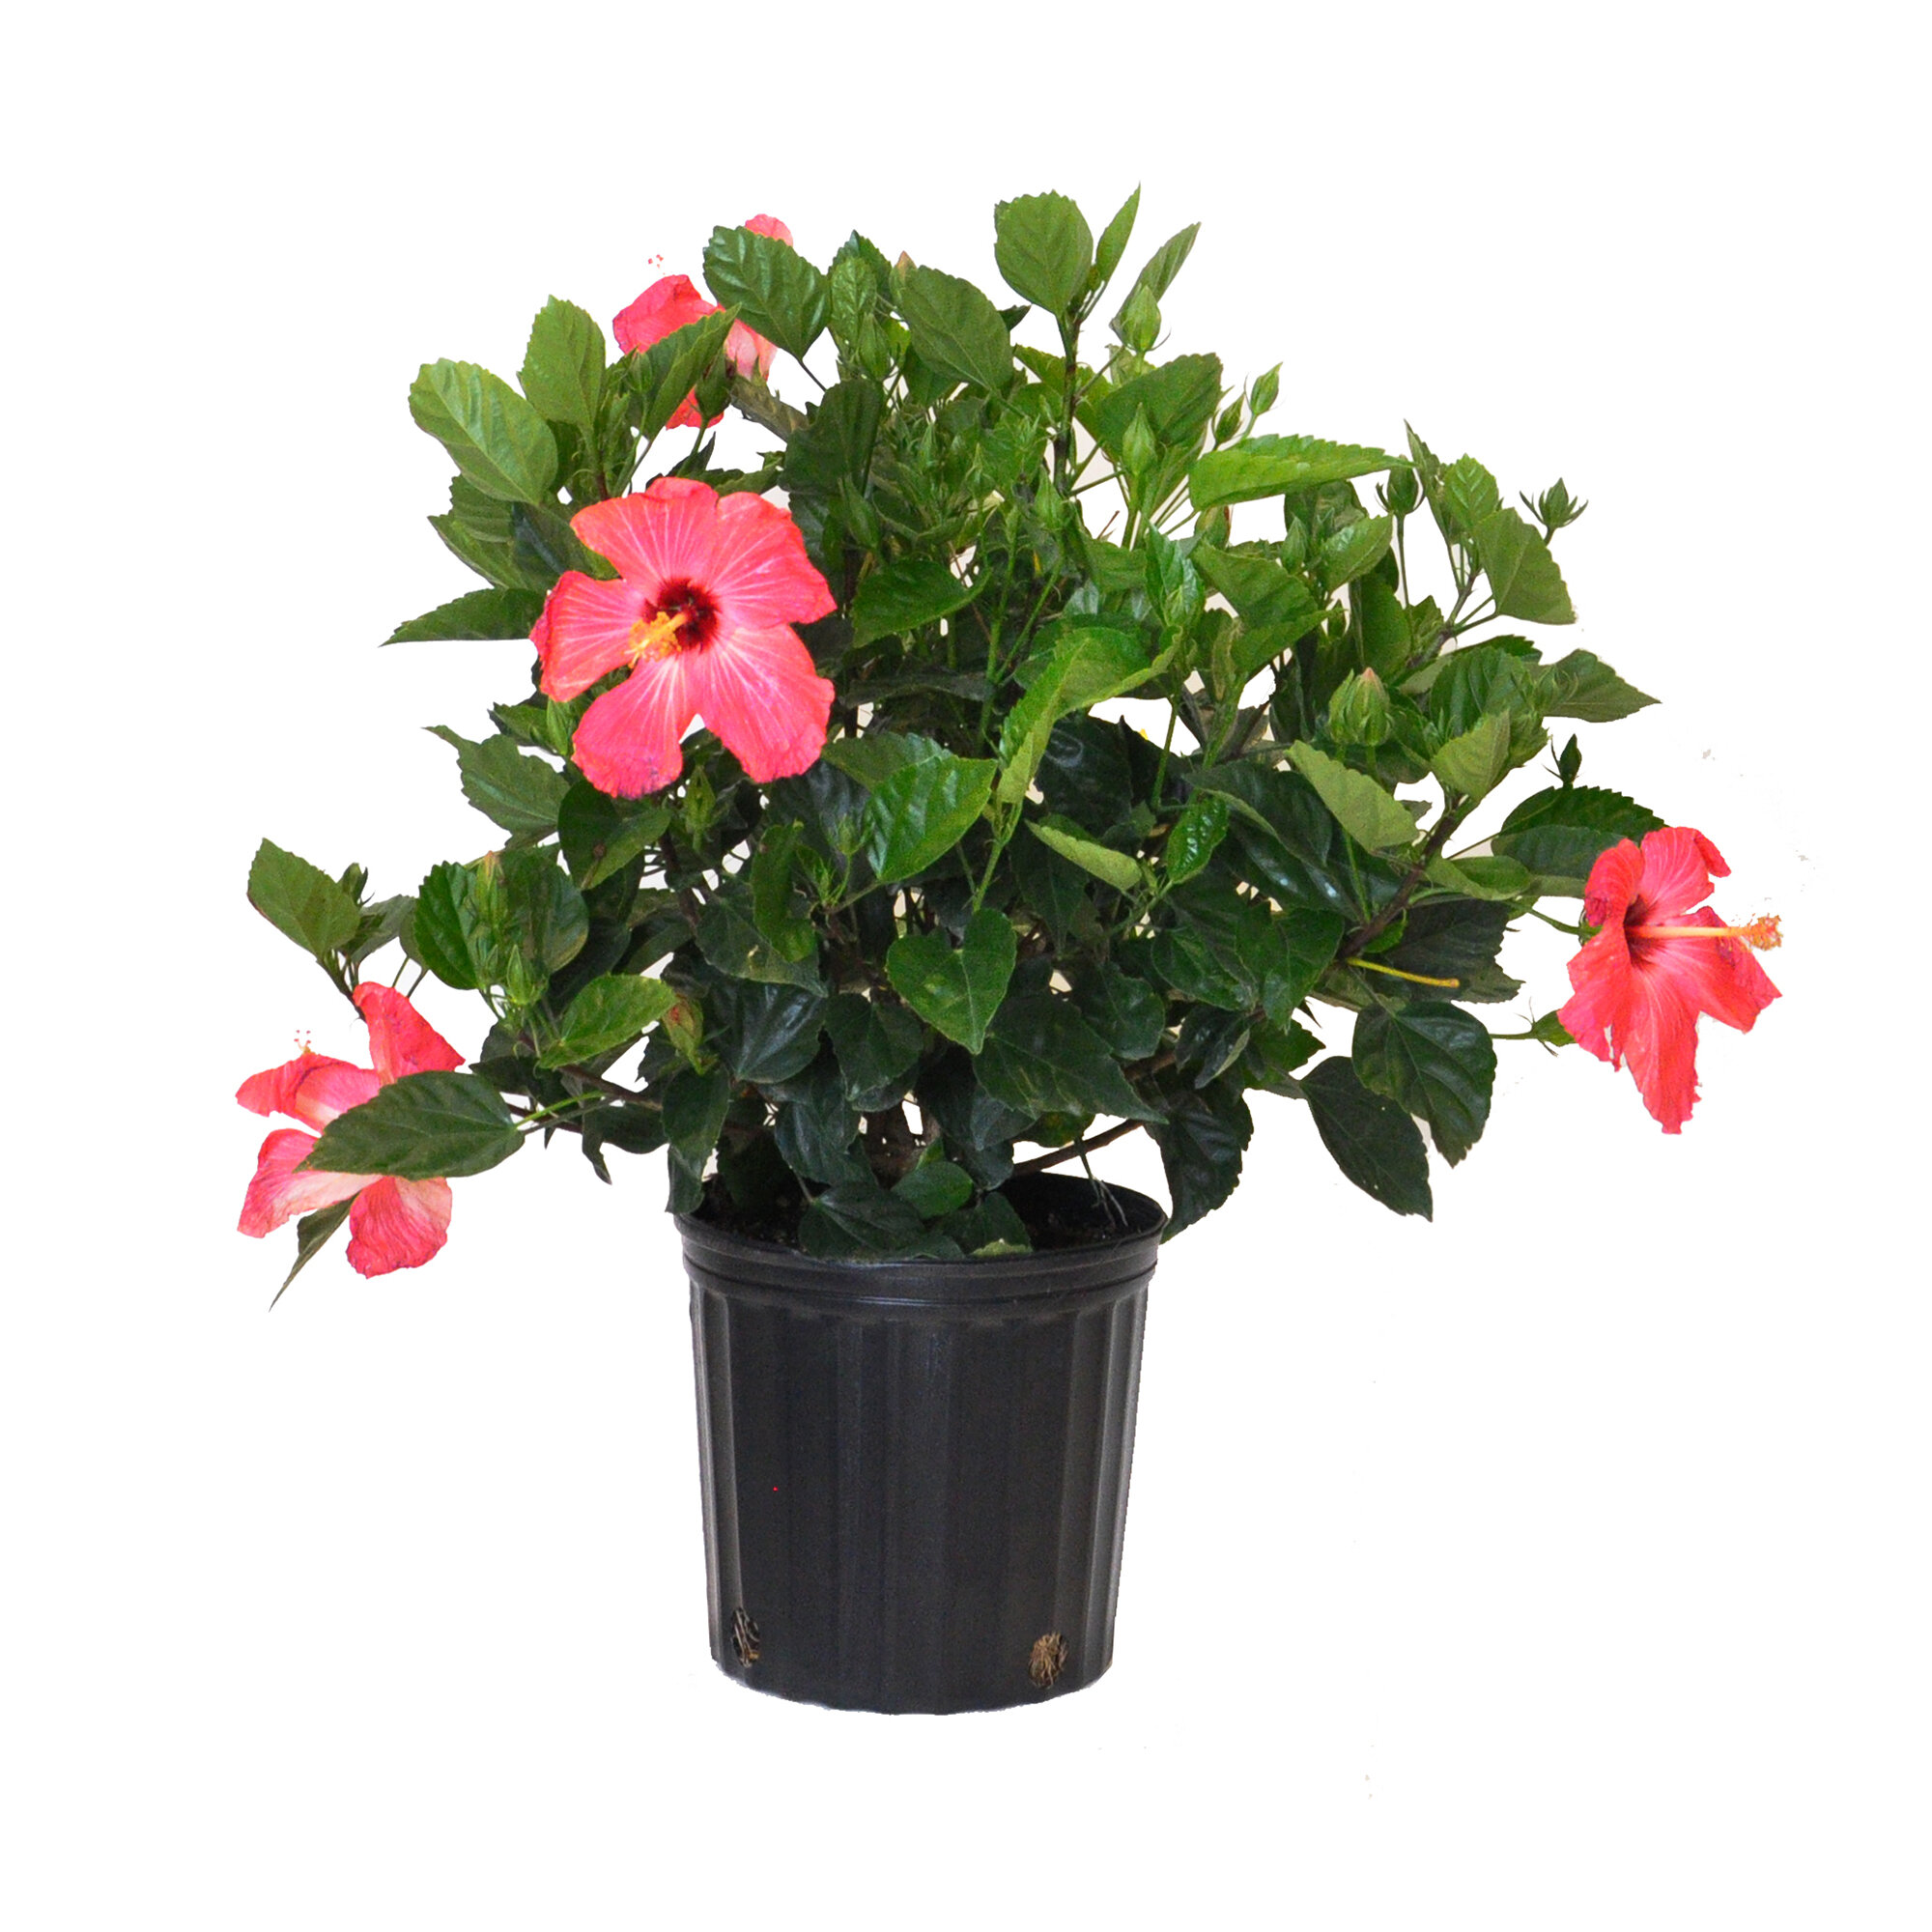 United Nursery Live Flowering Plant in Nursery Pot